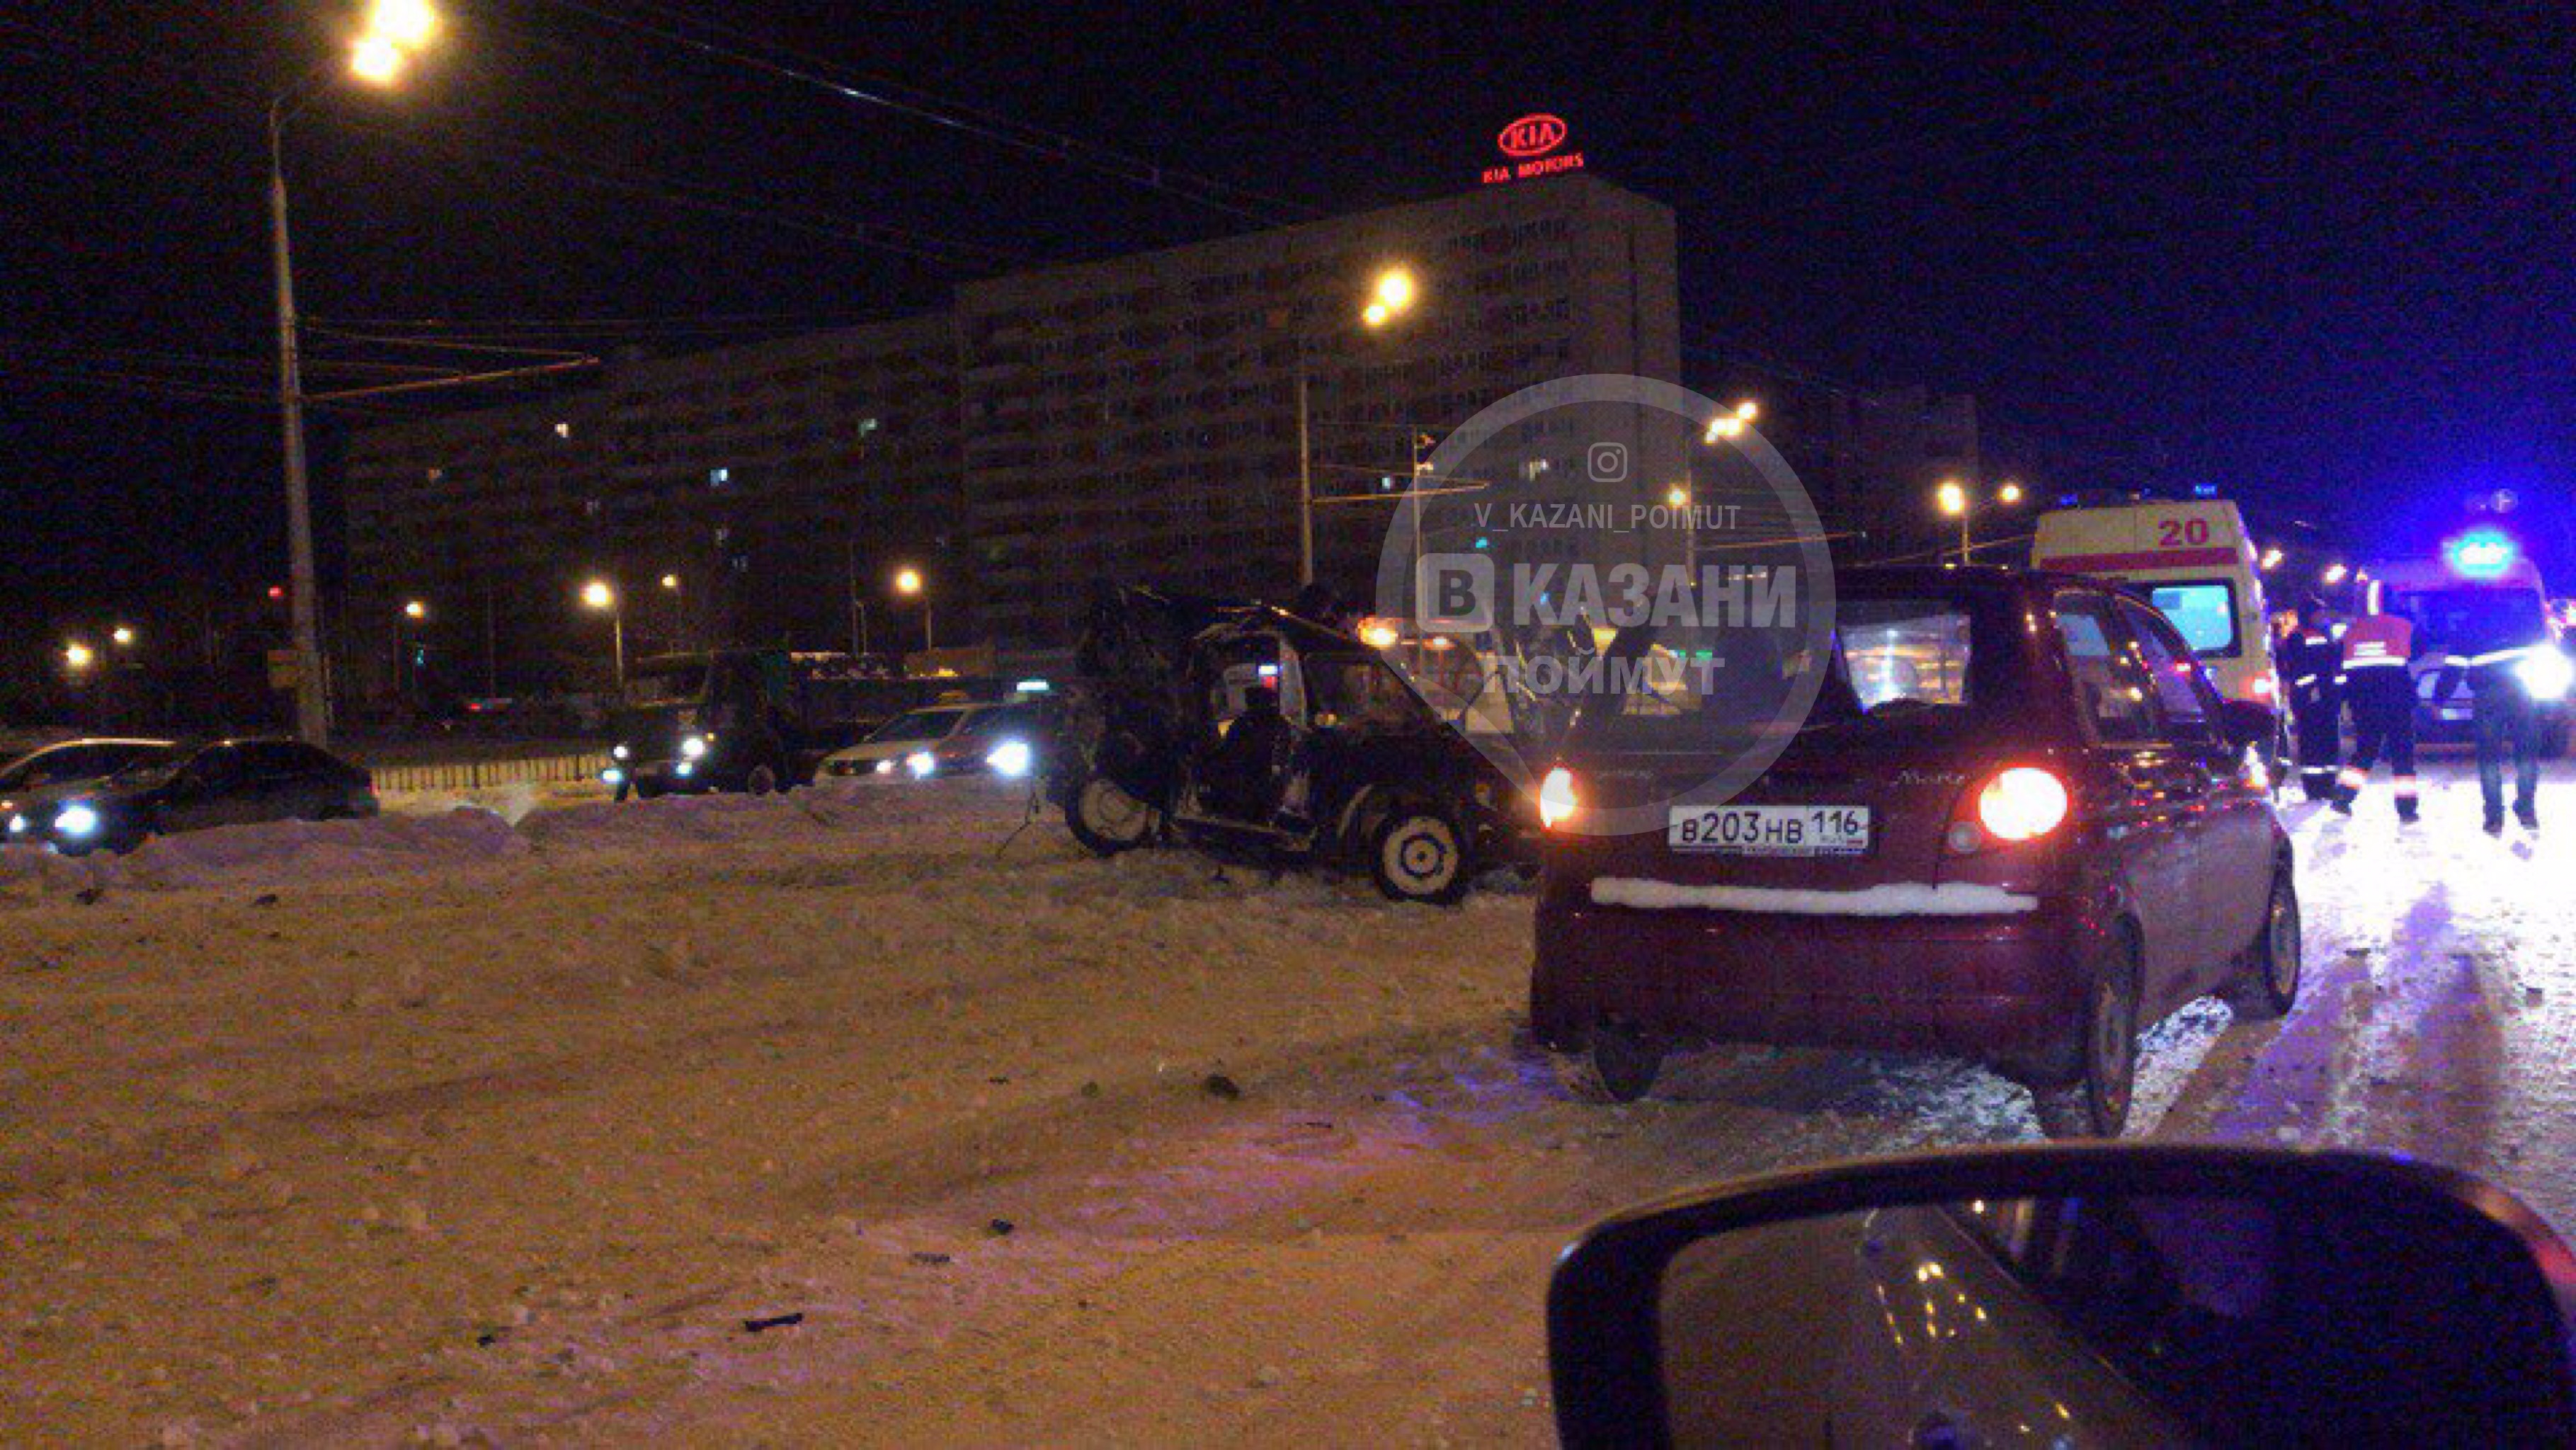 Что случилось в казани сегодня новости. ДТП В Казани ночью зима. Авария в Казани на Ямашева вчера.